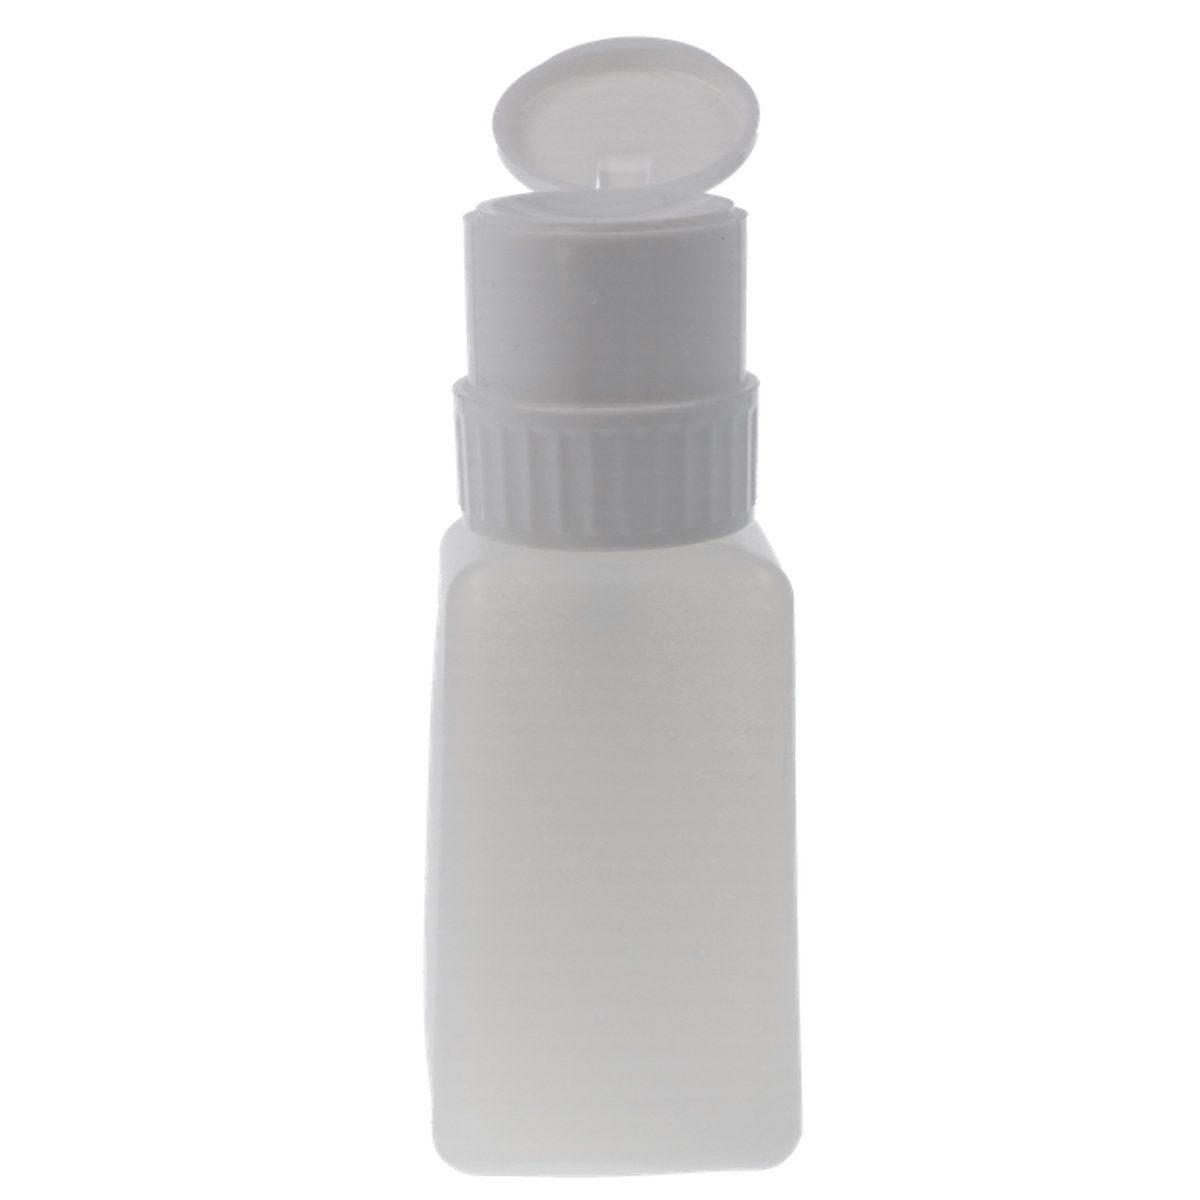 Sun Garden Nails Nageldesign Zubehör Dispenser - Pumpflasche weiß für 200ml Flüssigkeit